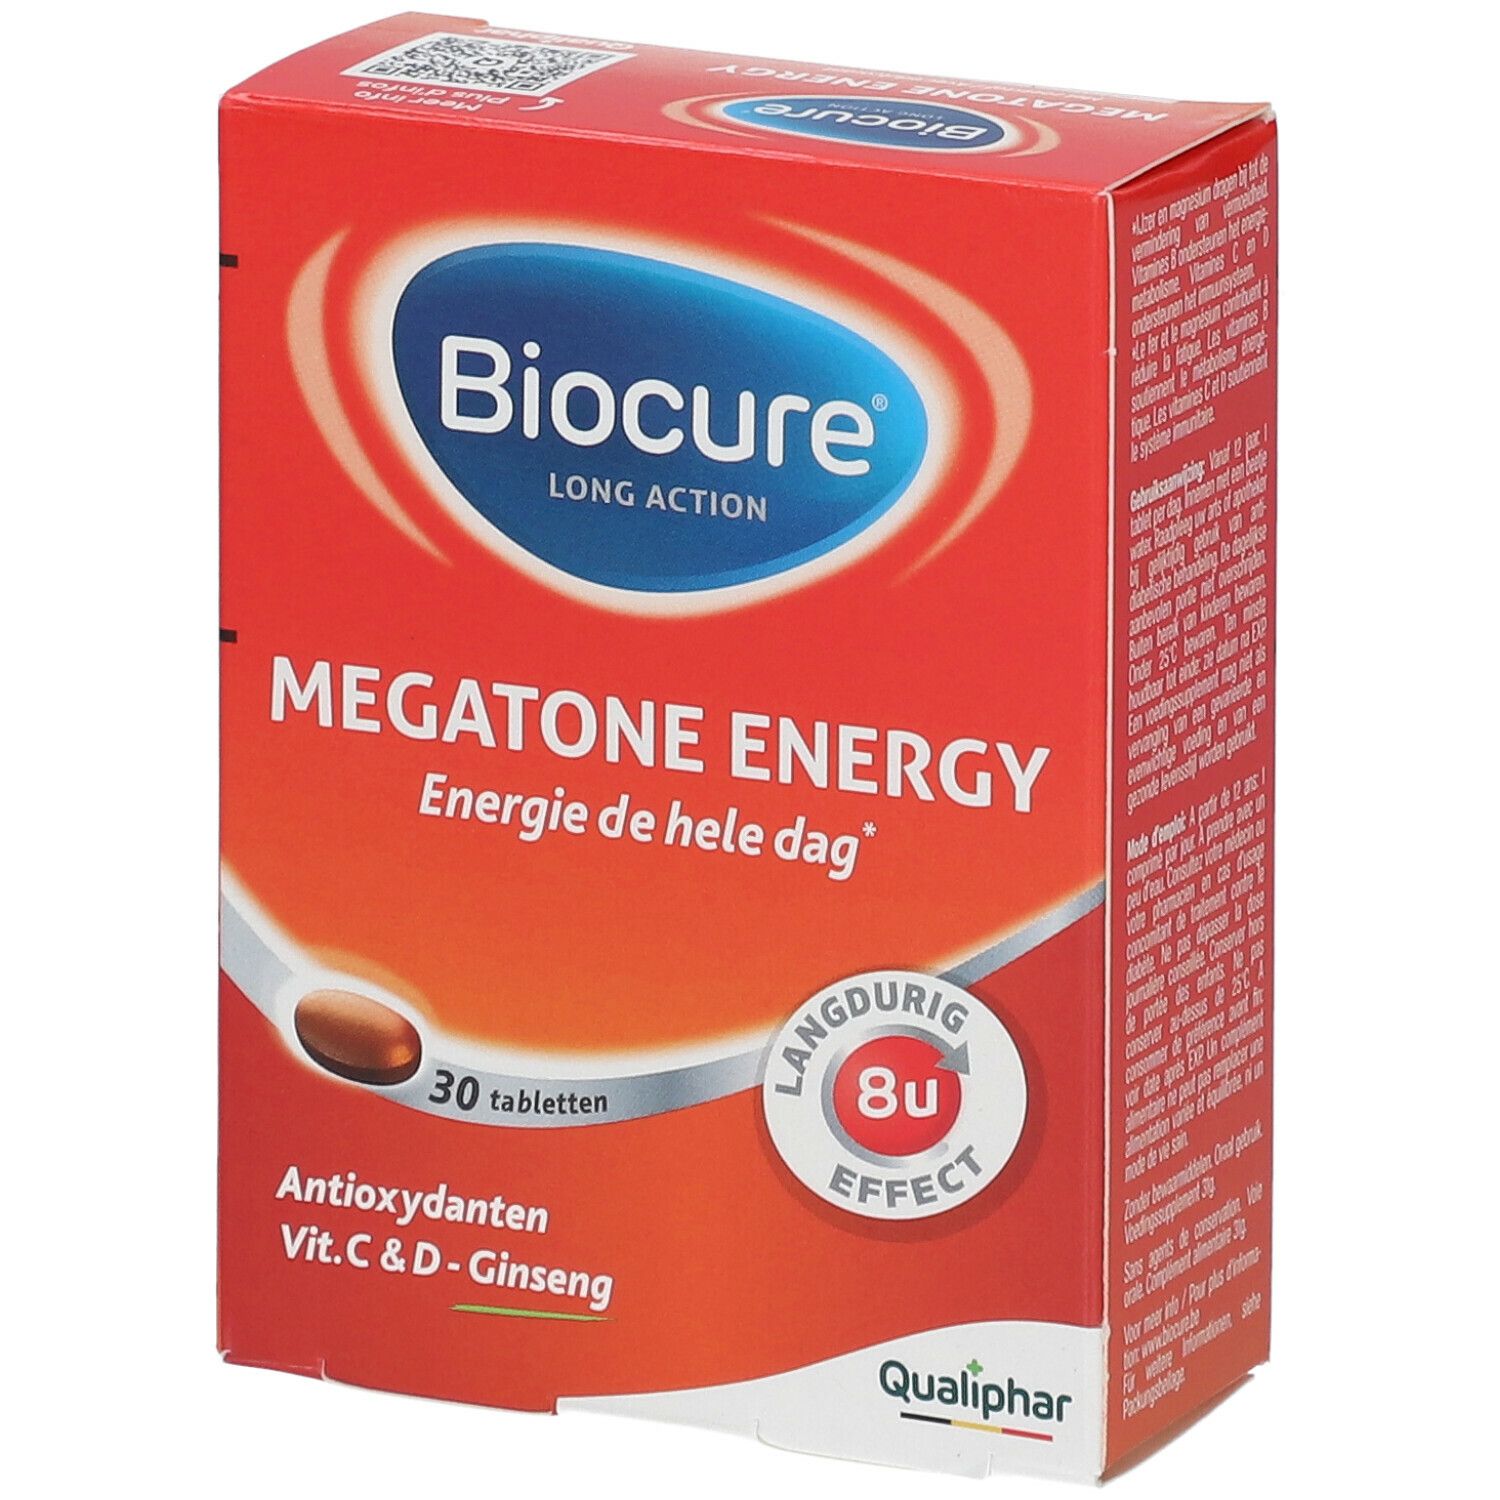 Biocure® Long Action Megatone Energy